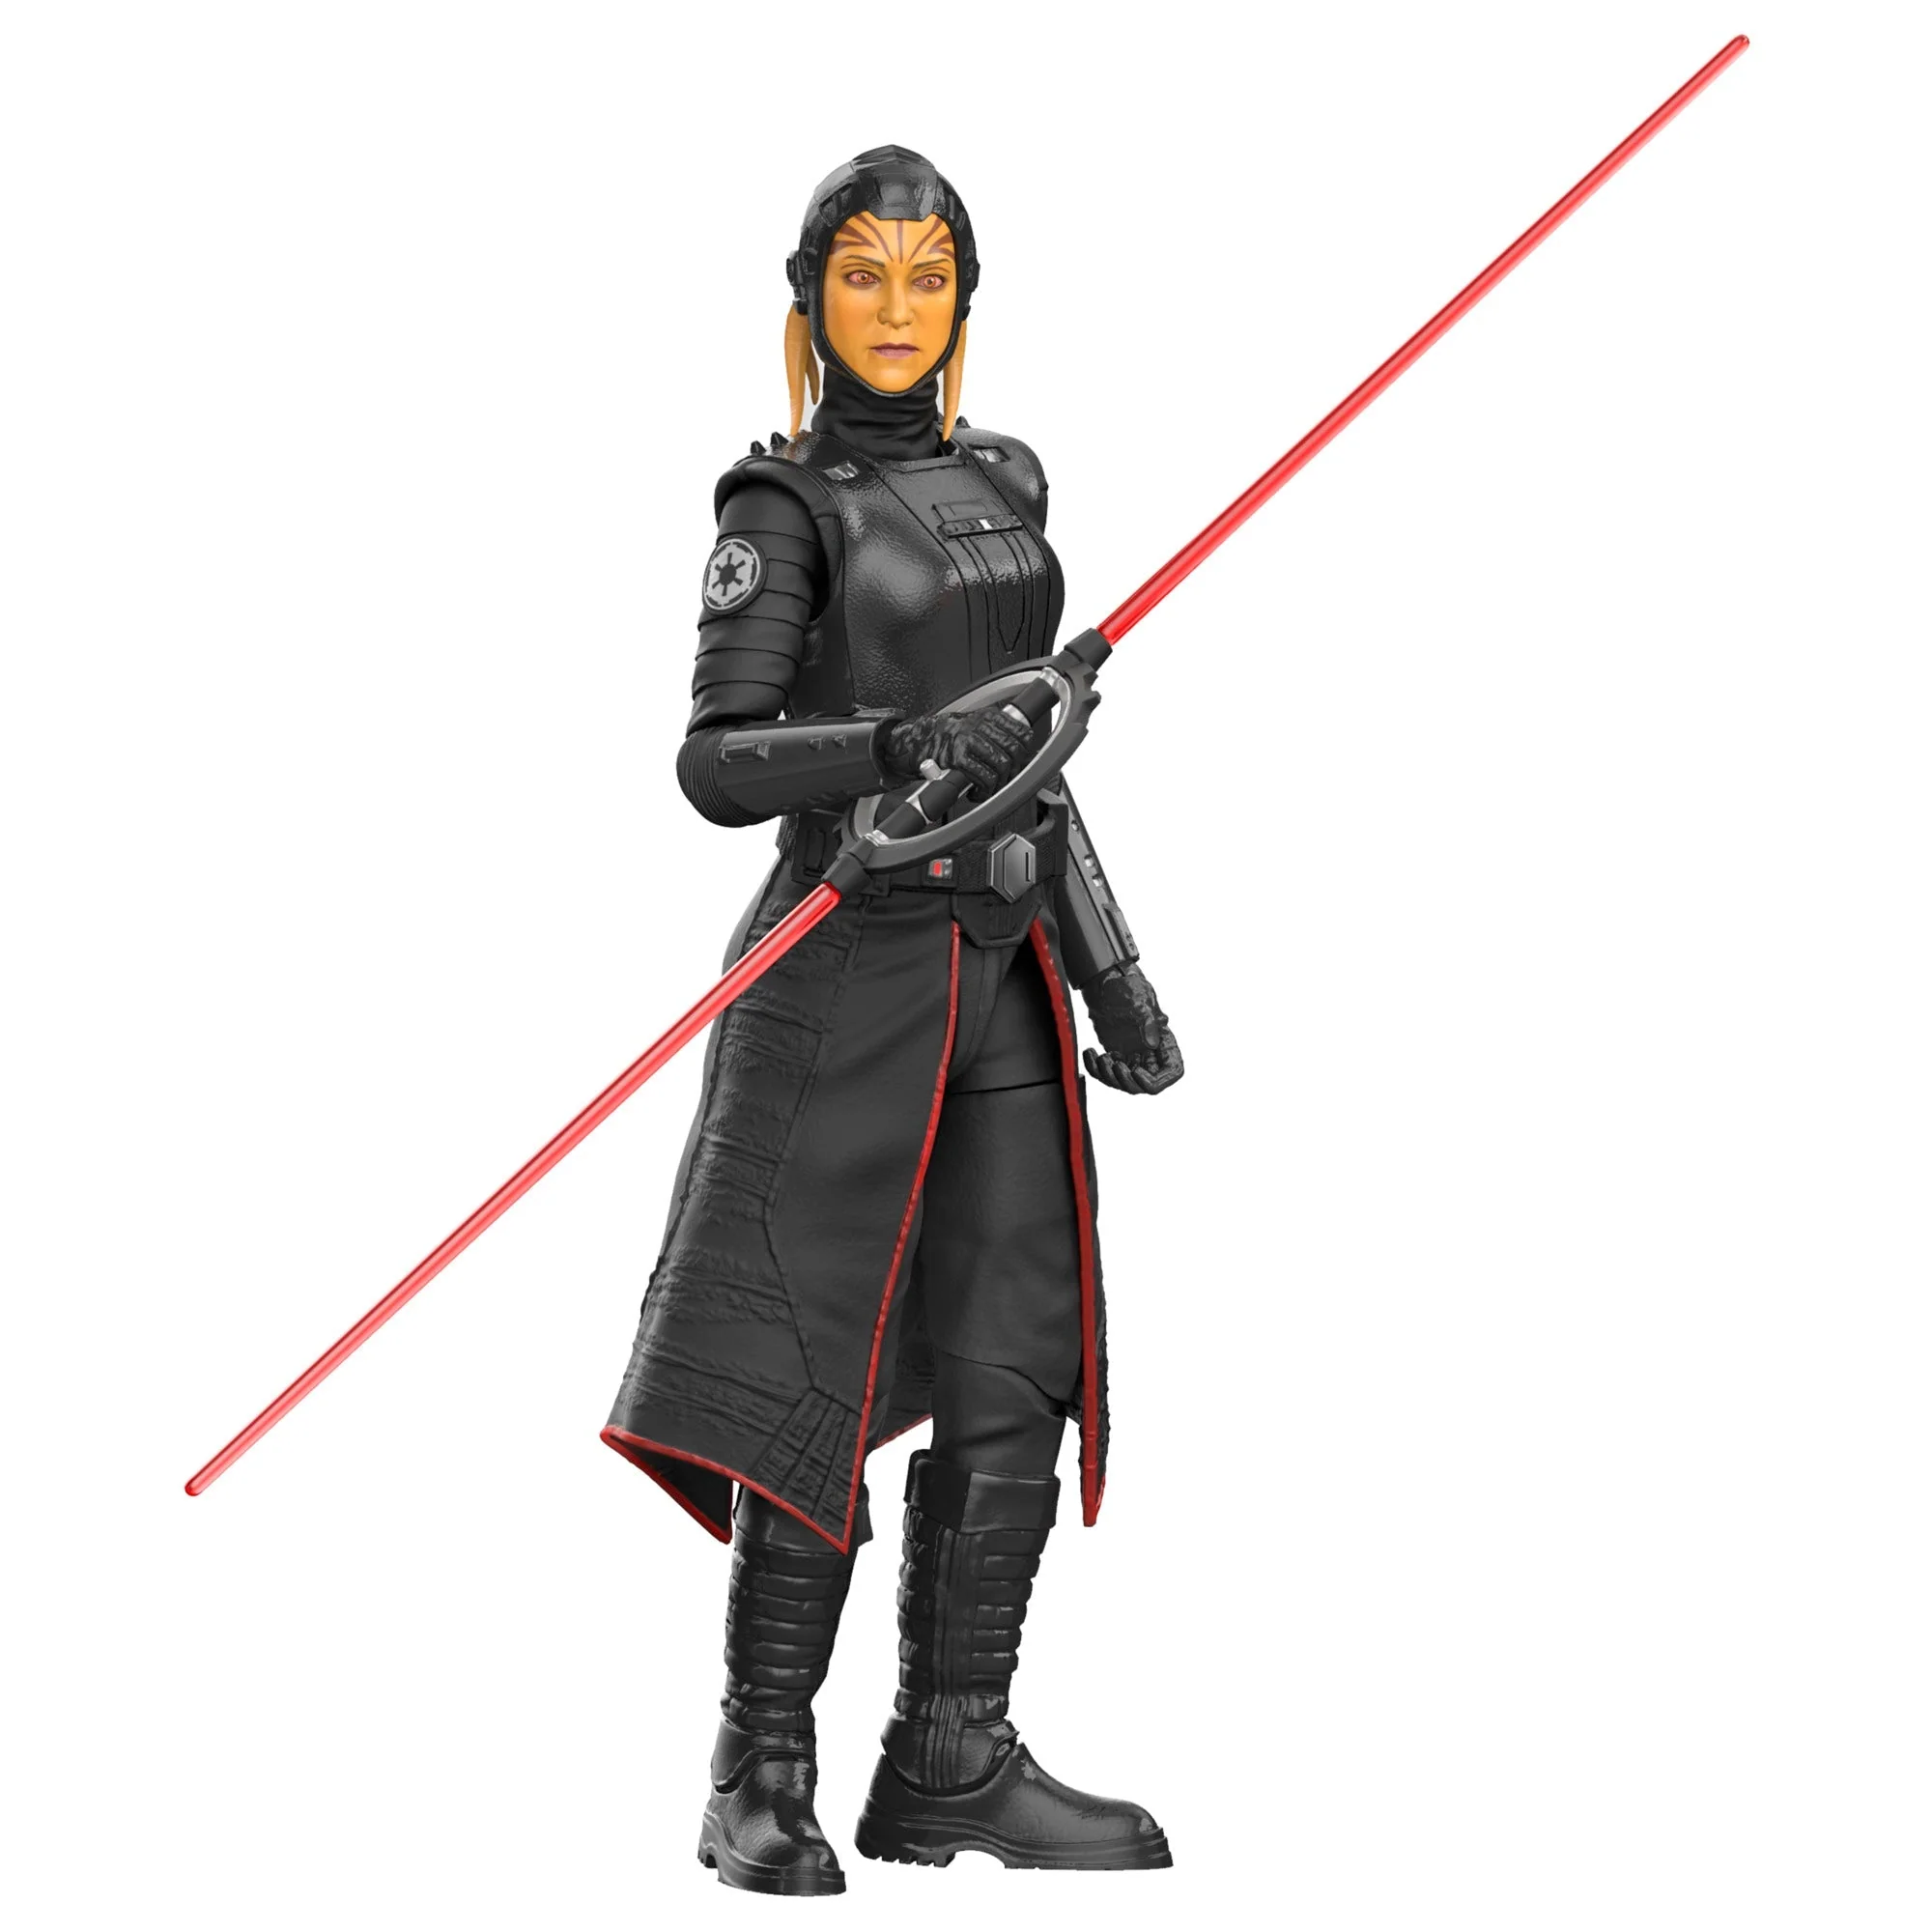 Inquisiteur-vierde-zus-figurine-Star-Wars-Obi-Wan-Kenobi-Zwart-Serie-Hasbro-15-cm-5010996124845-koninkrijk-figurine-5